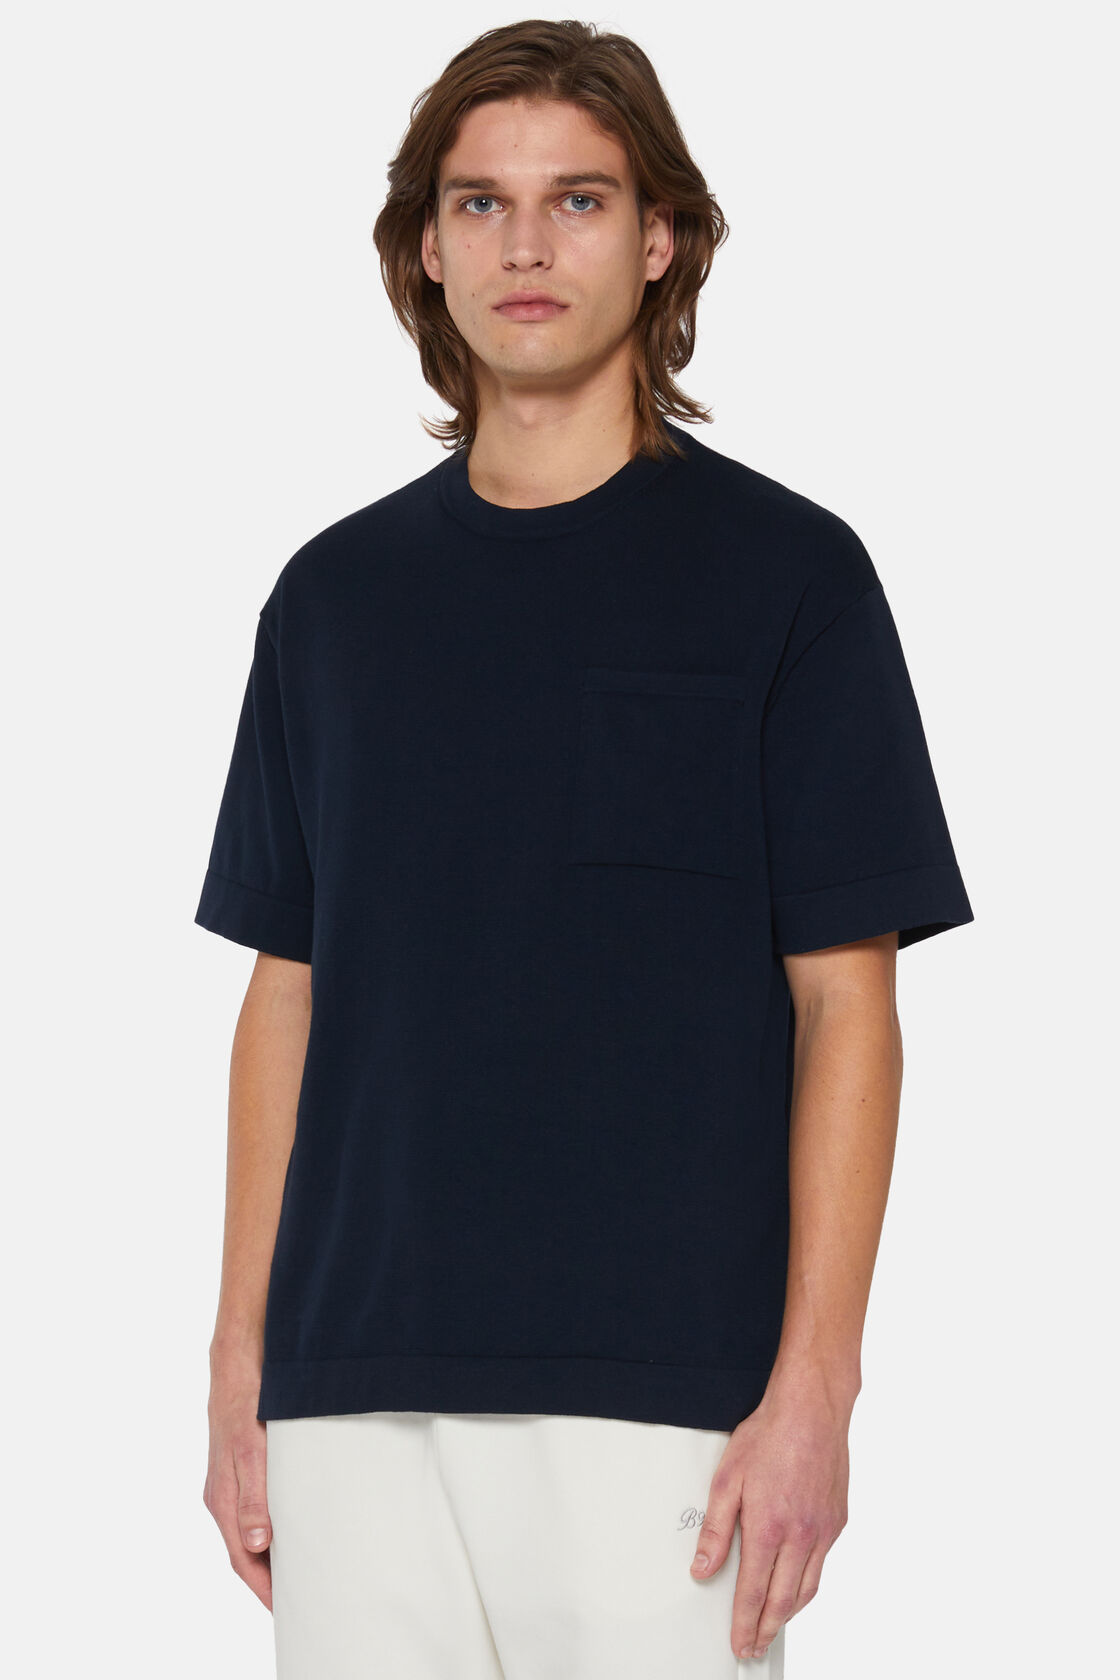 Granatowa dzianinowa koszulka z bawełny pima, Navy blue, hi-res